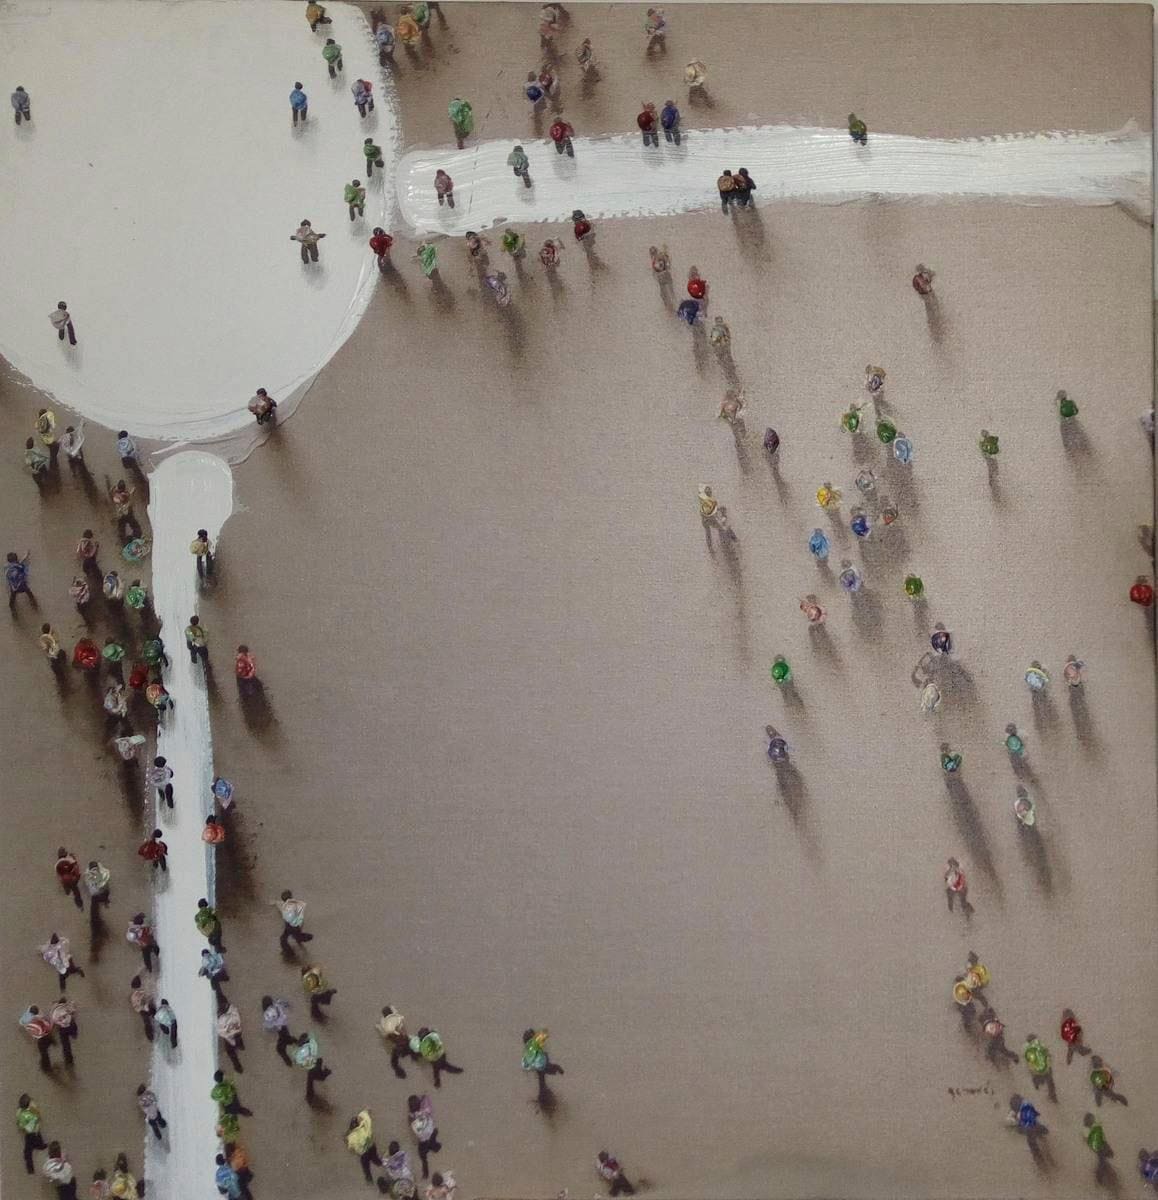 Ölbild »Menschengruppe«, 100cm x 100cm